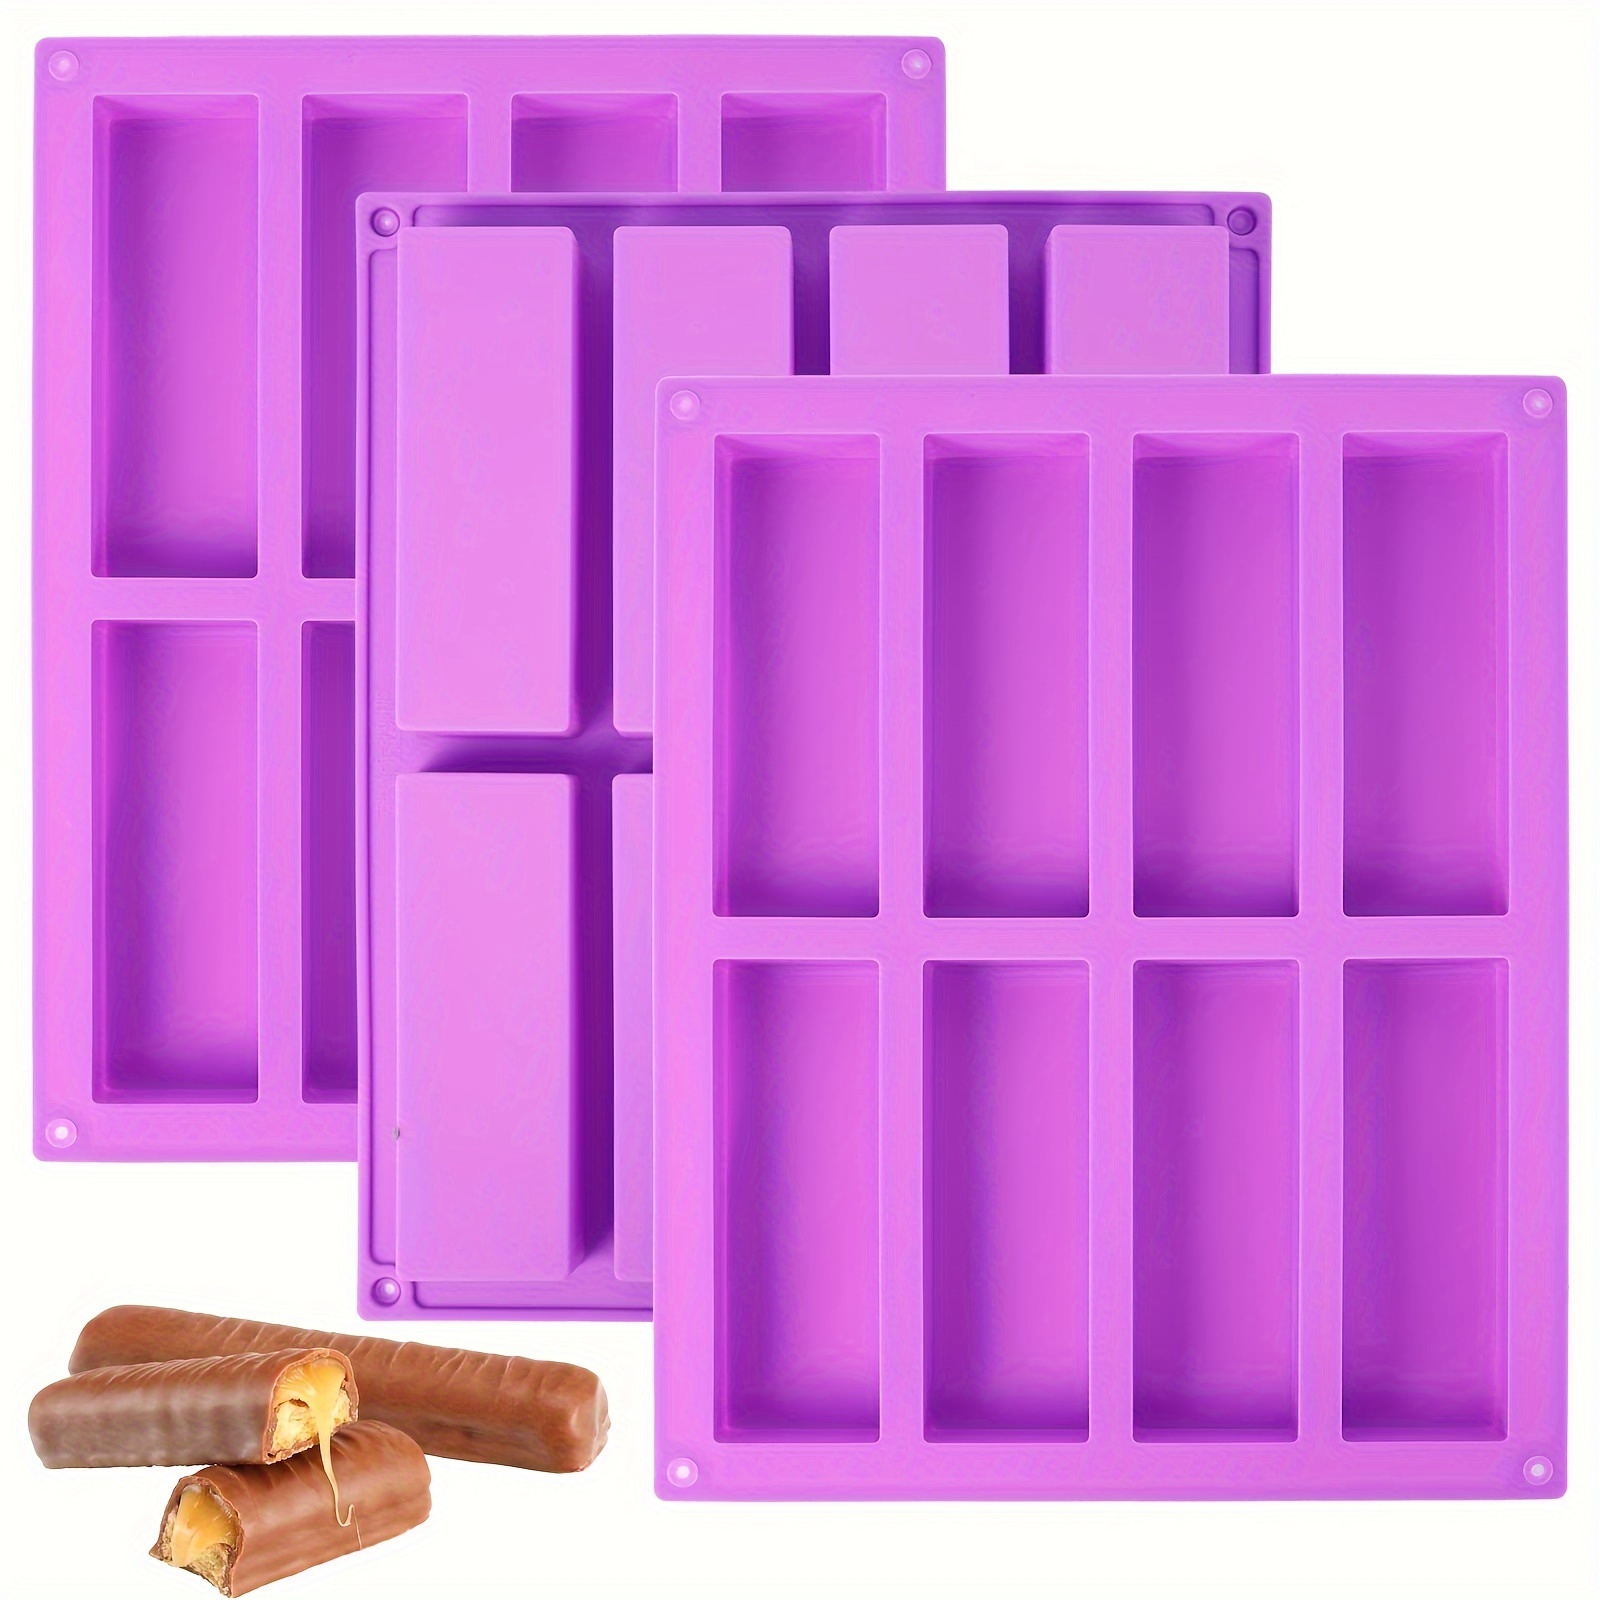 Molde de barra de granola de 8 cavidades, paquete de 2 moldes rectangulares  de silicona para chocolate, molde para hornear cereales, barra energética